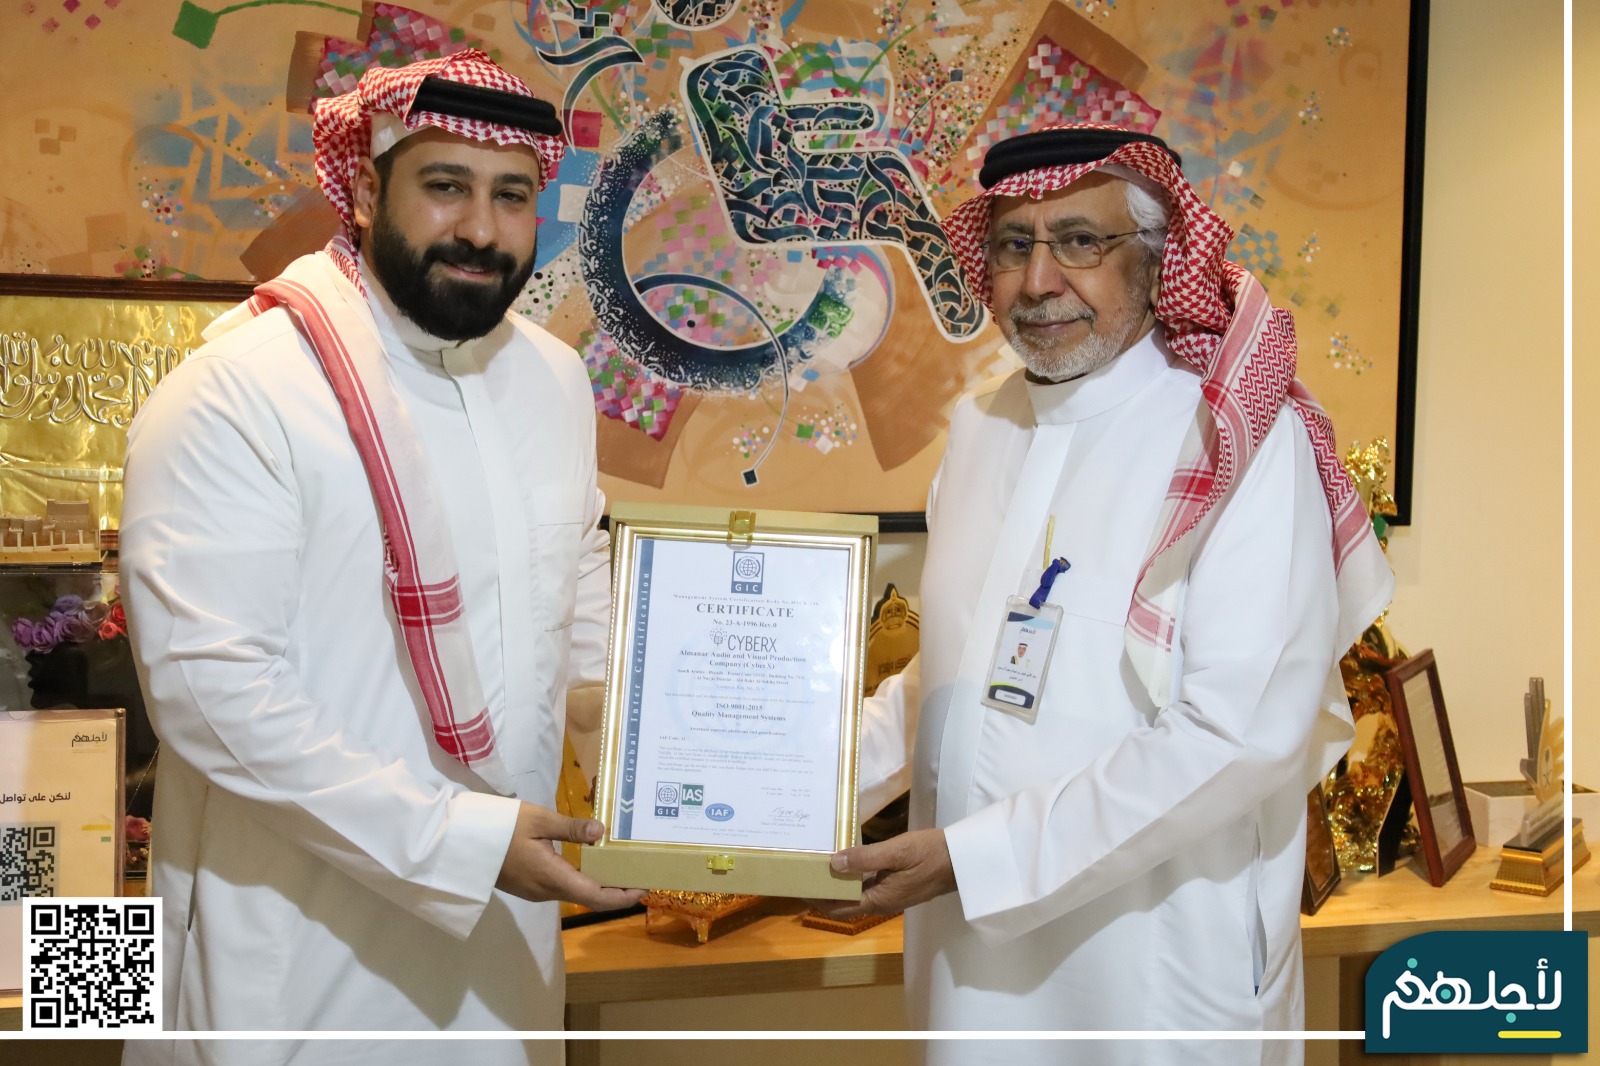 سايبرأكس تفتخر لكونها الشركة العربية الأولى الحائزة على شهادة الآيزو في مجال التوعية  بالأمن السيبراني